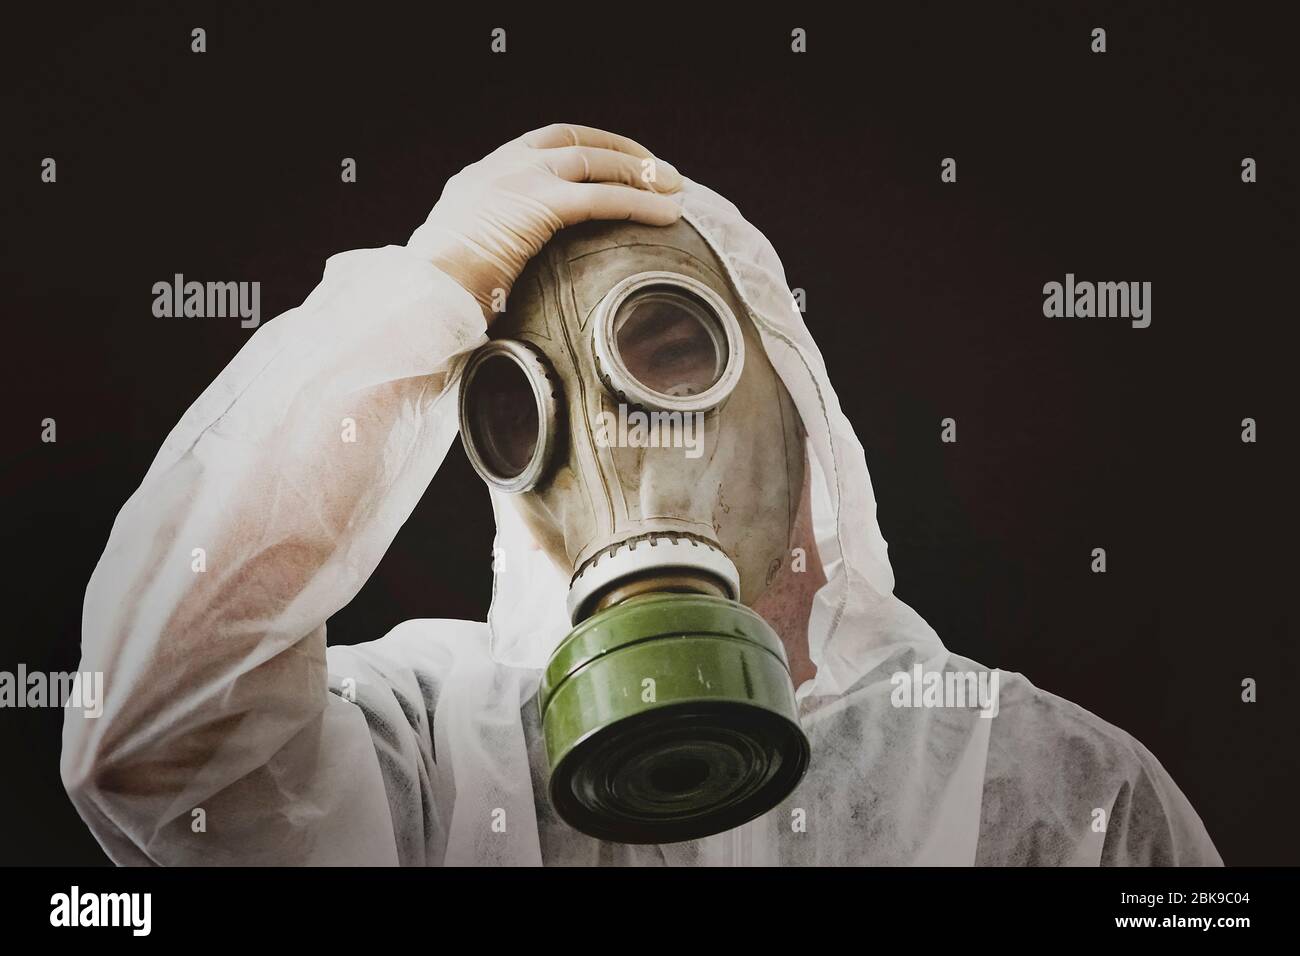 Gases tóxicos fotografías e imágenes de alta resolución - Alamy